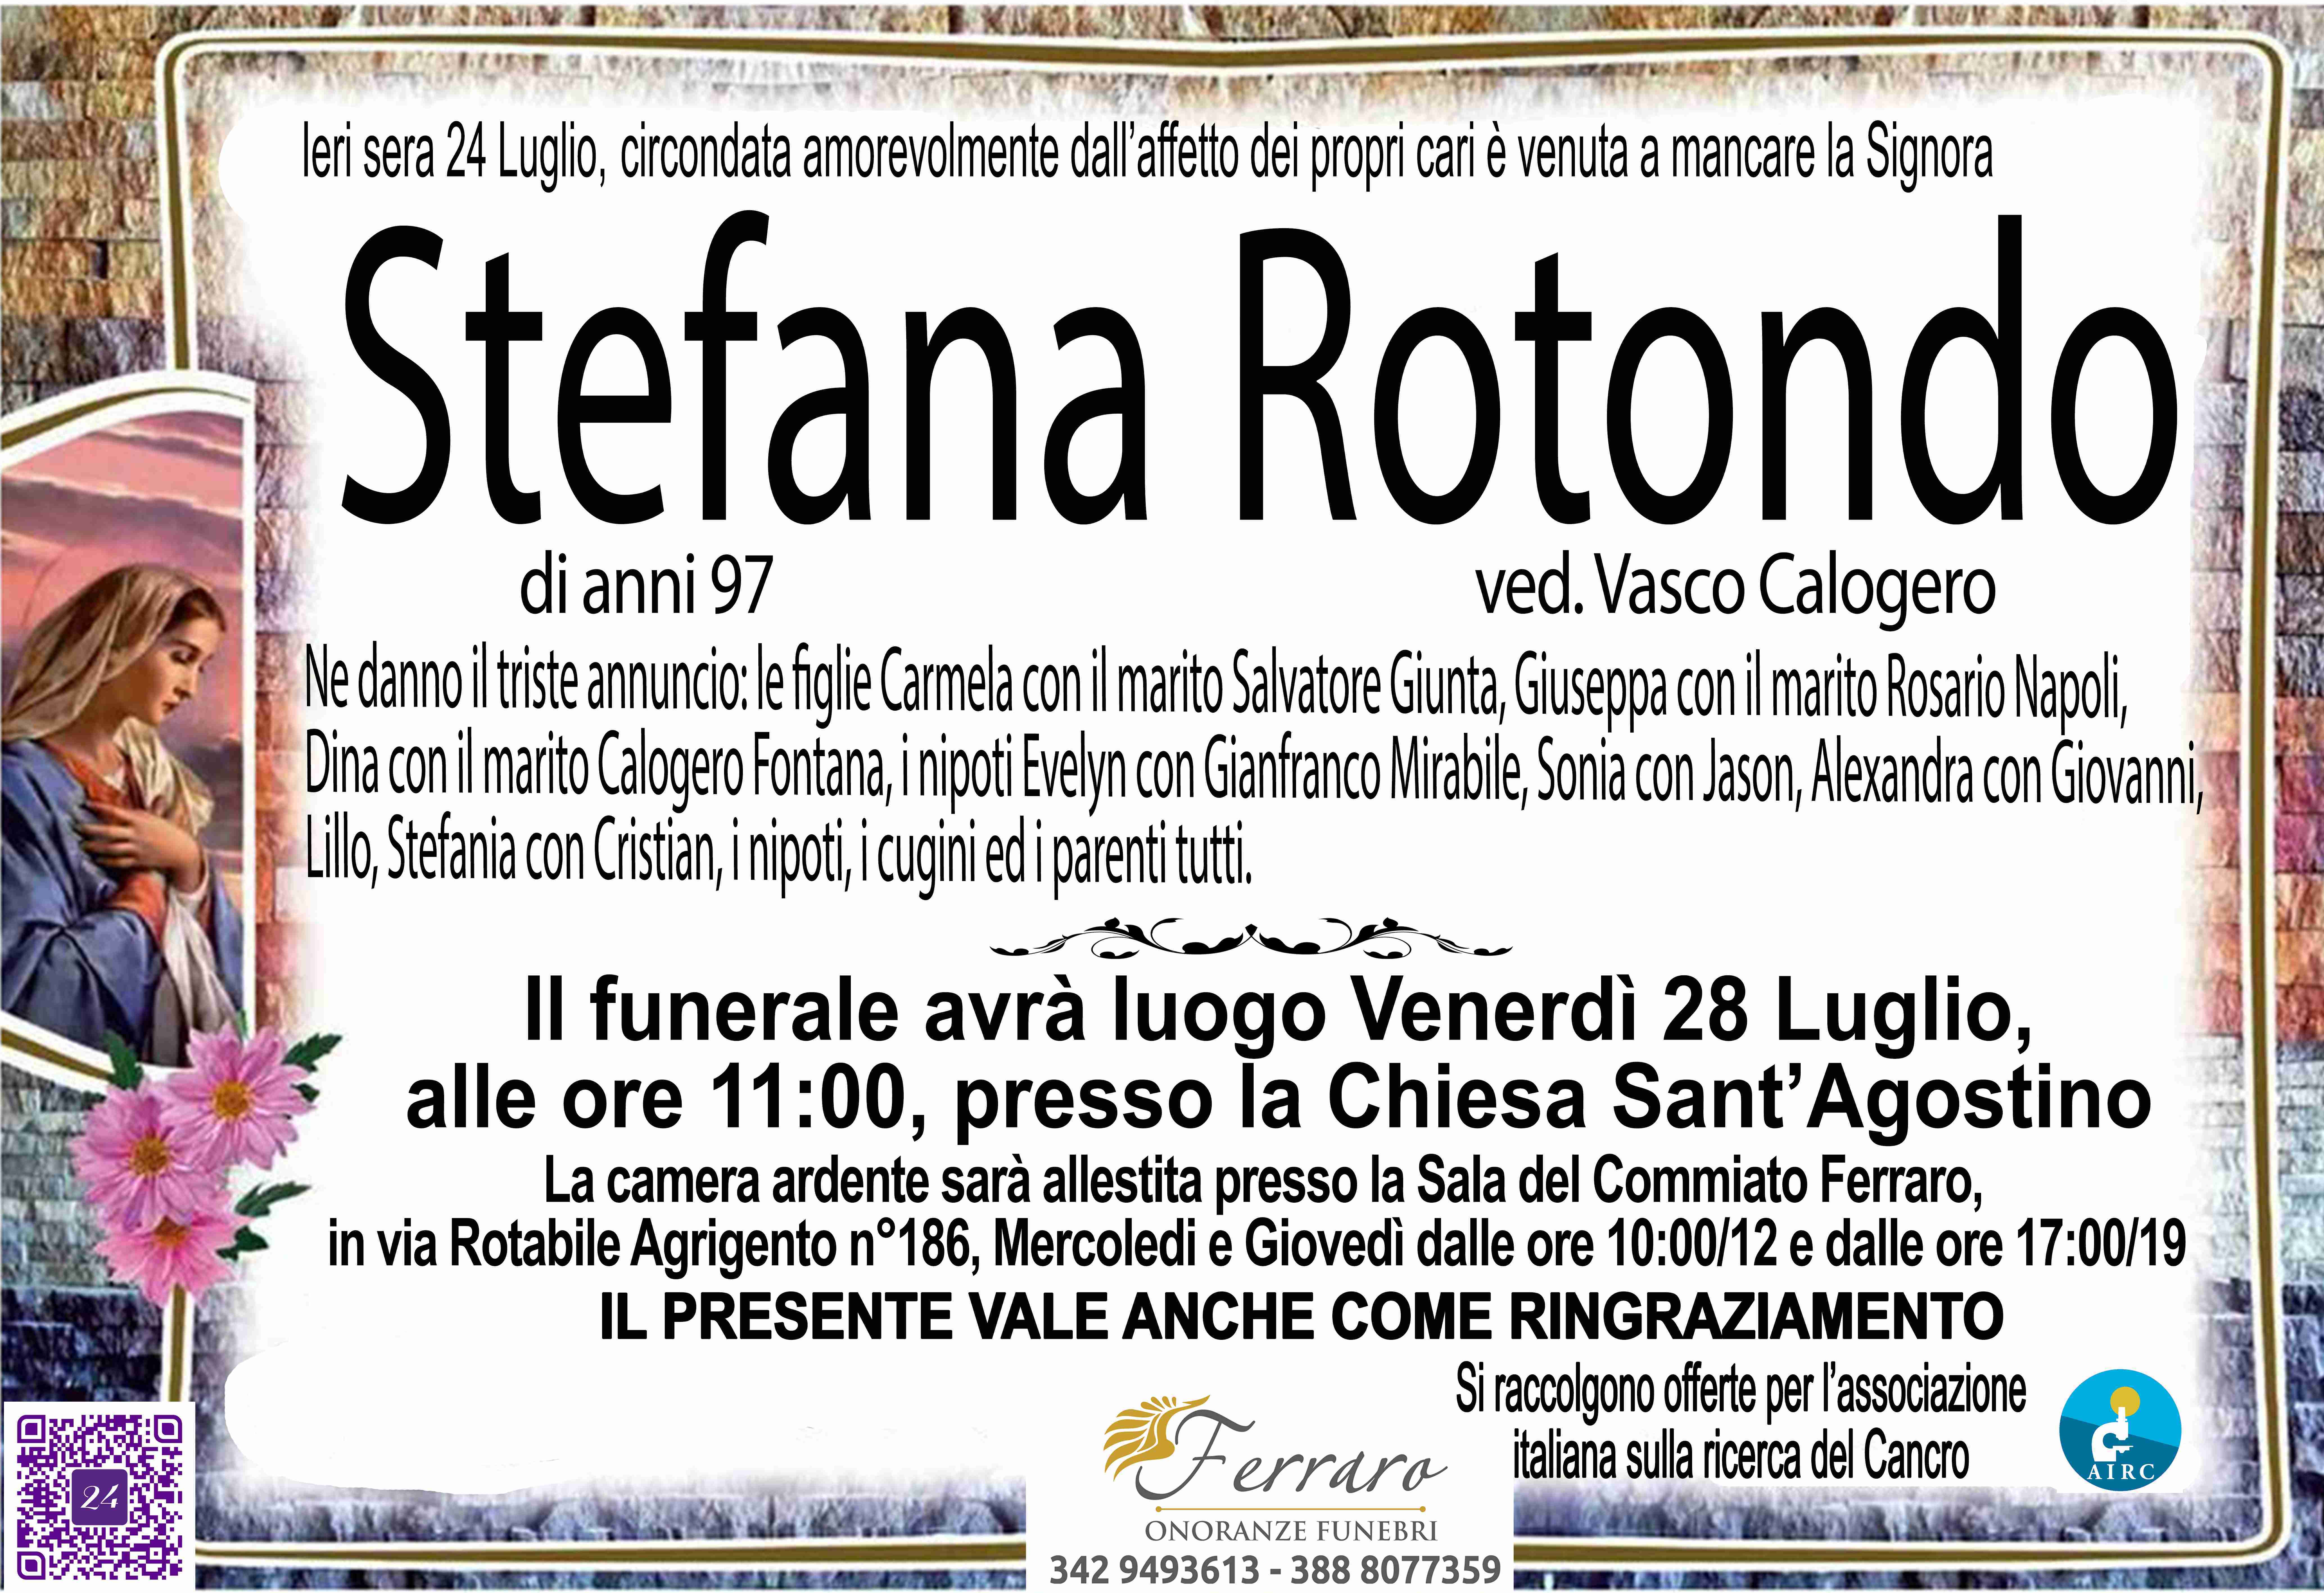 Stefana Rotondo